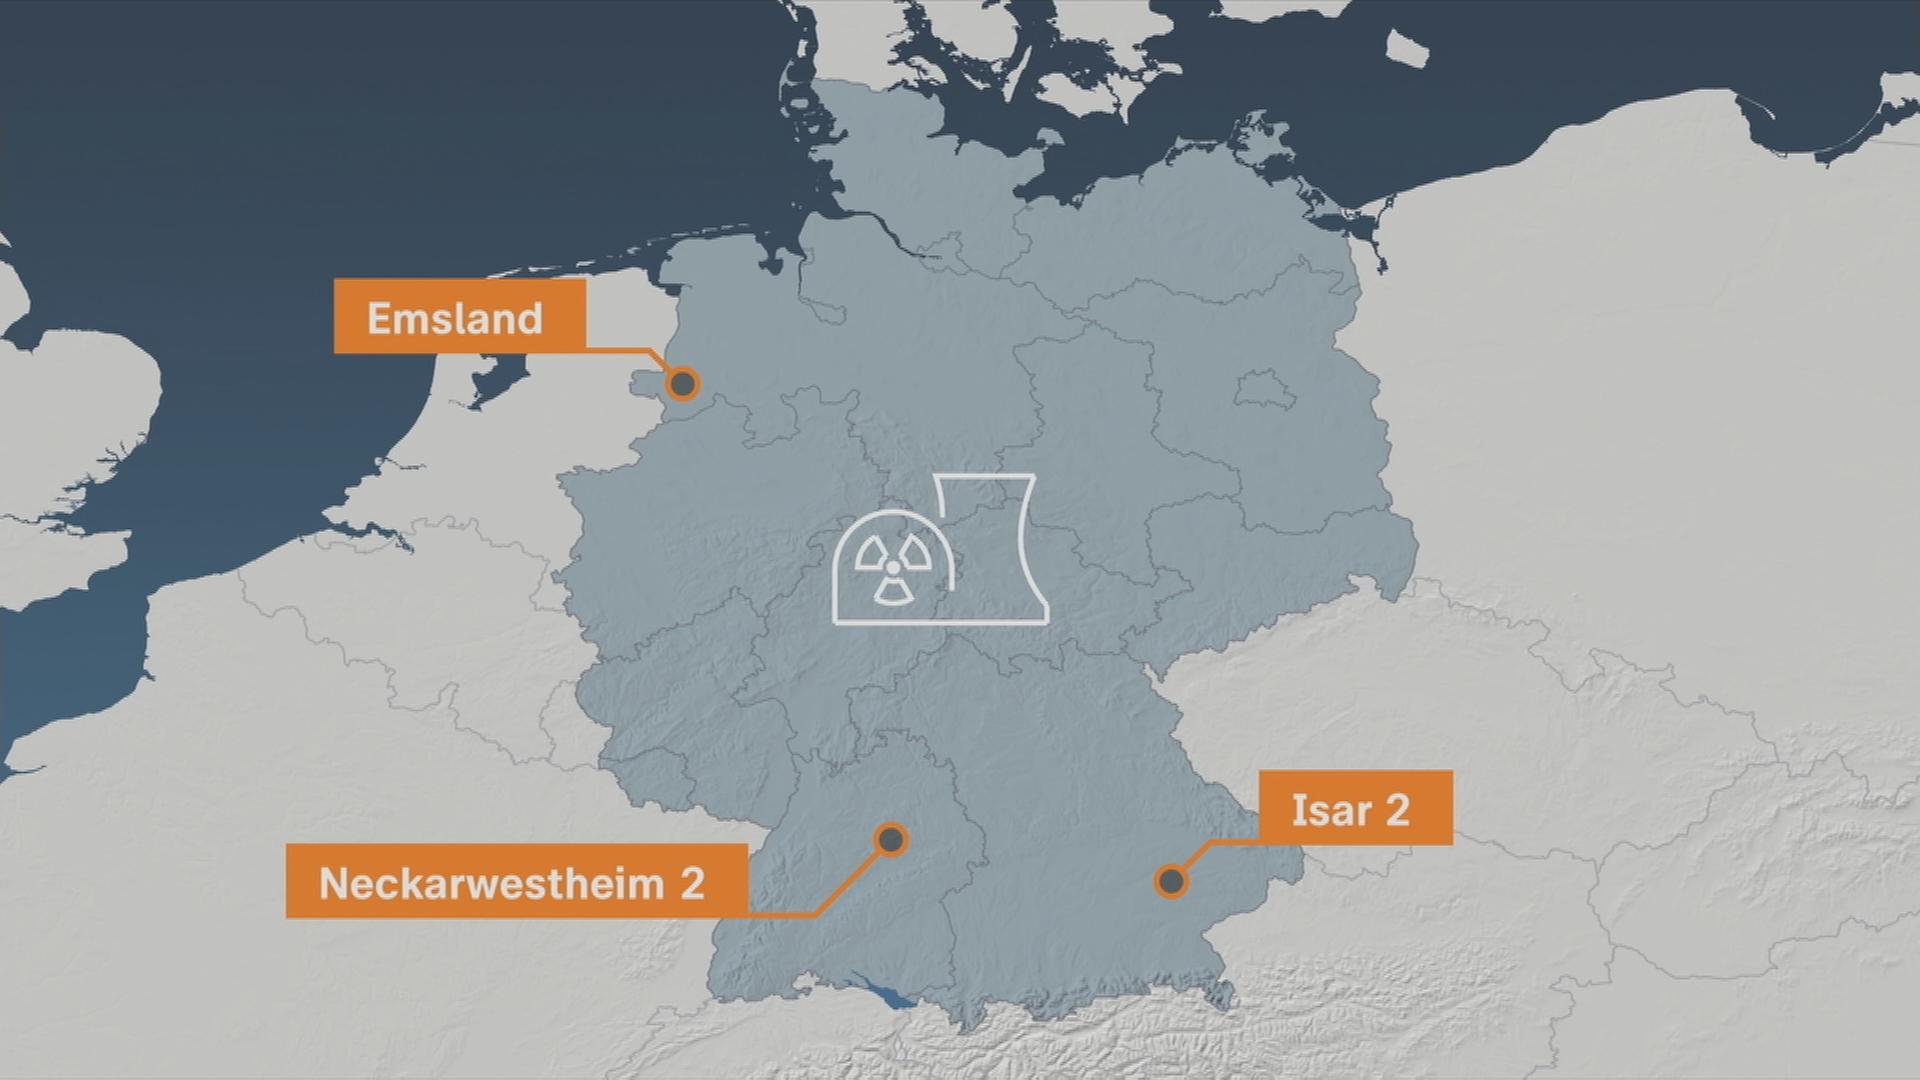 Auf dem Bild ist eine Grafik zu sehen, welche die letzten drei AKWs Emsland, Neckarwestheim 2 und Isar 2.